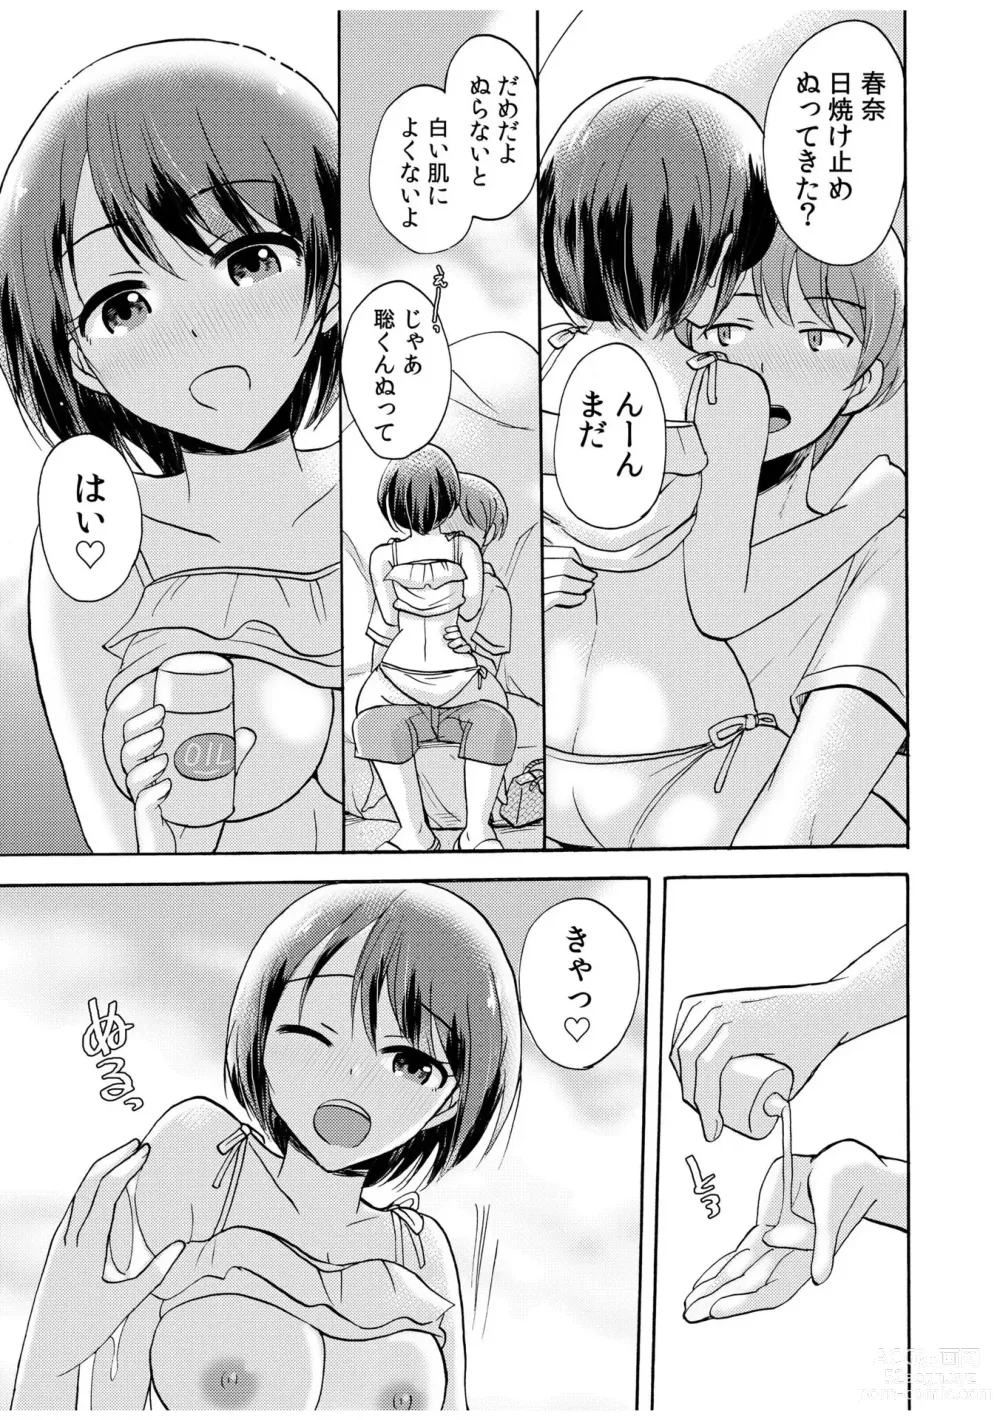 Page 5 of manga 「Zettai ni kimi o hanasanai」Aishi au 2-ri wa nando mo hageshiku…